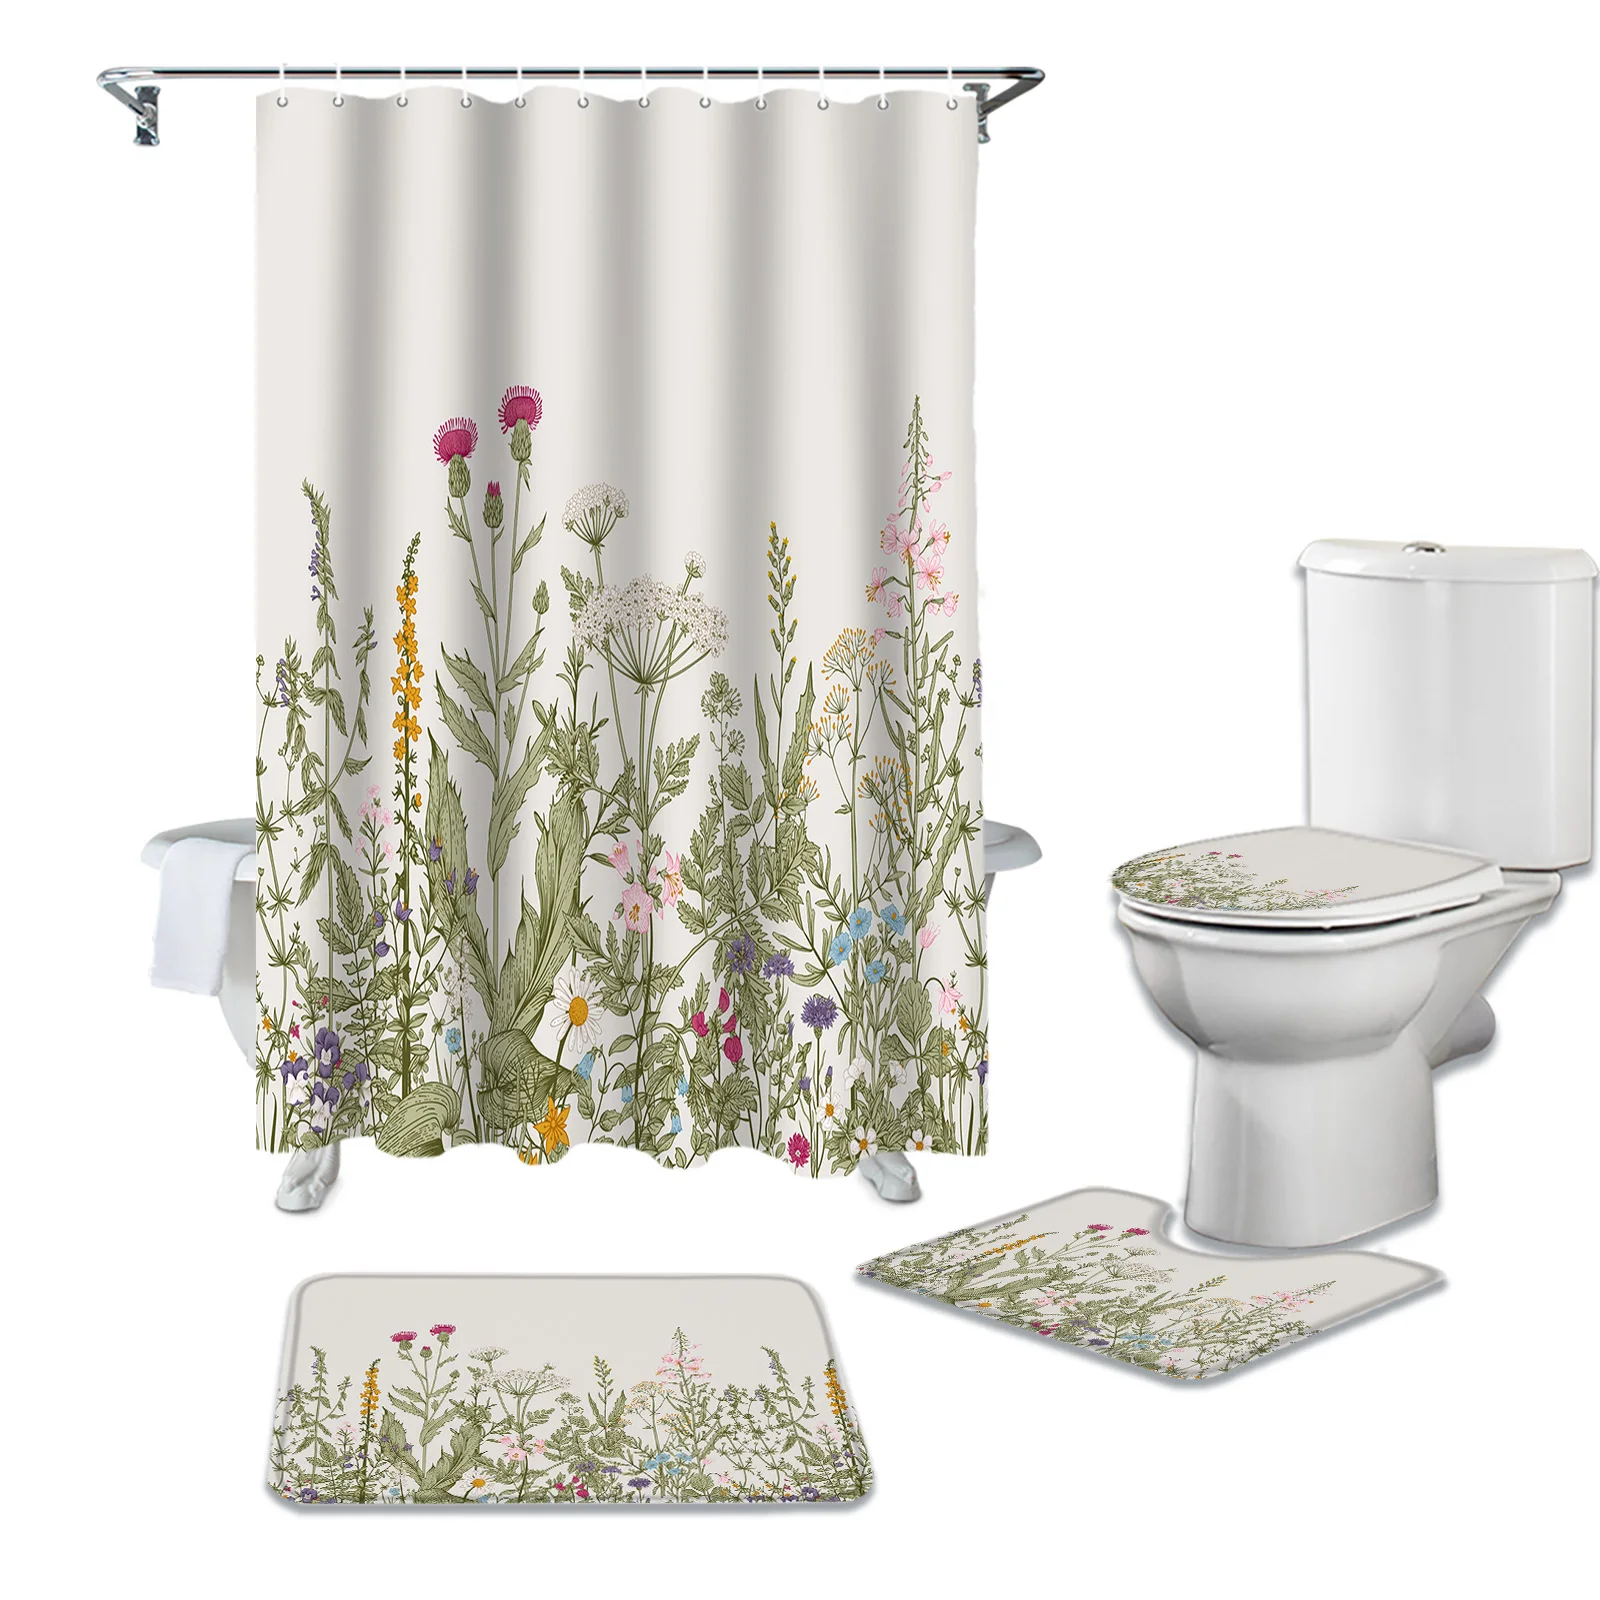 

Винтажная занавеска для душа в ванную комнату с травами и цветами, набор ковриков, крышка для туалета, напольные коврики, аксессуары для ван...